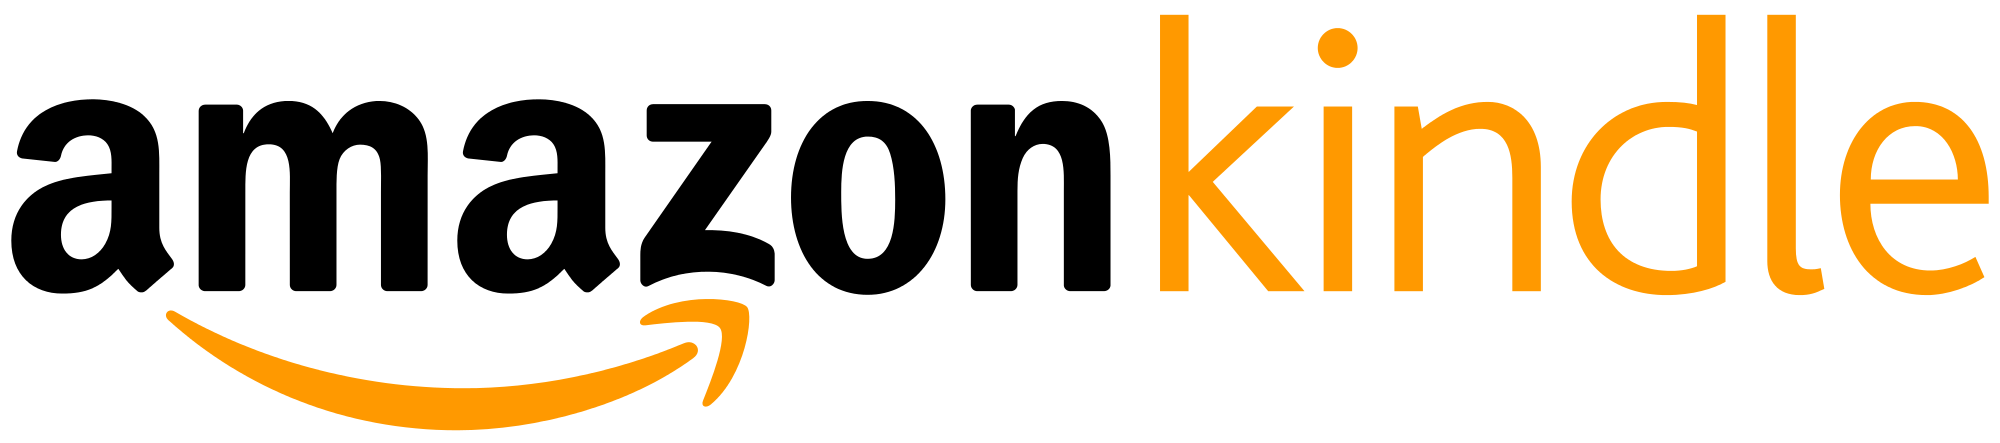 Amazon_Kindle_logo